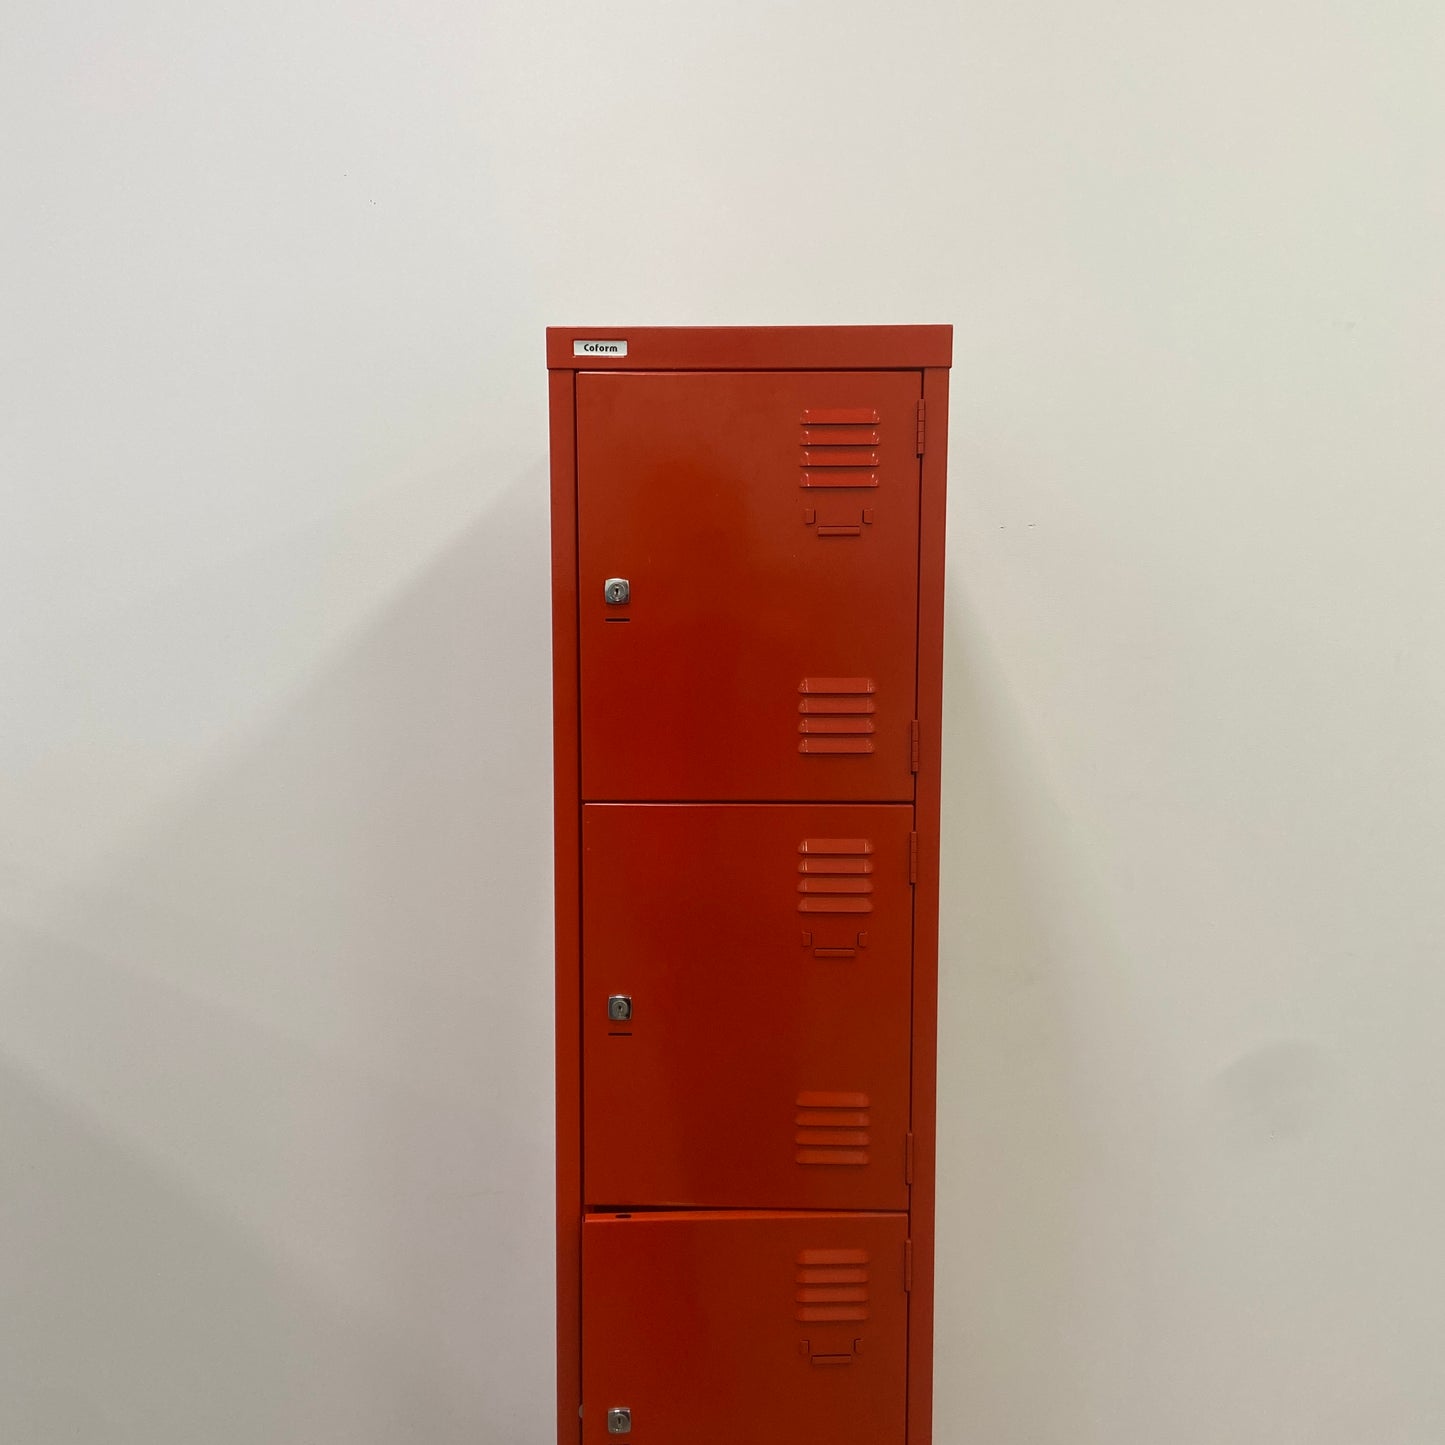 Coform Single Locker Red 4 Door - needs repairs